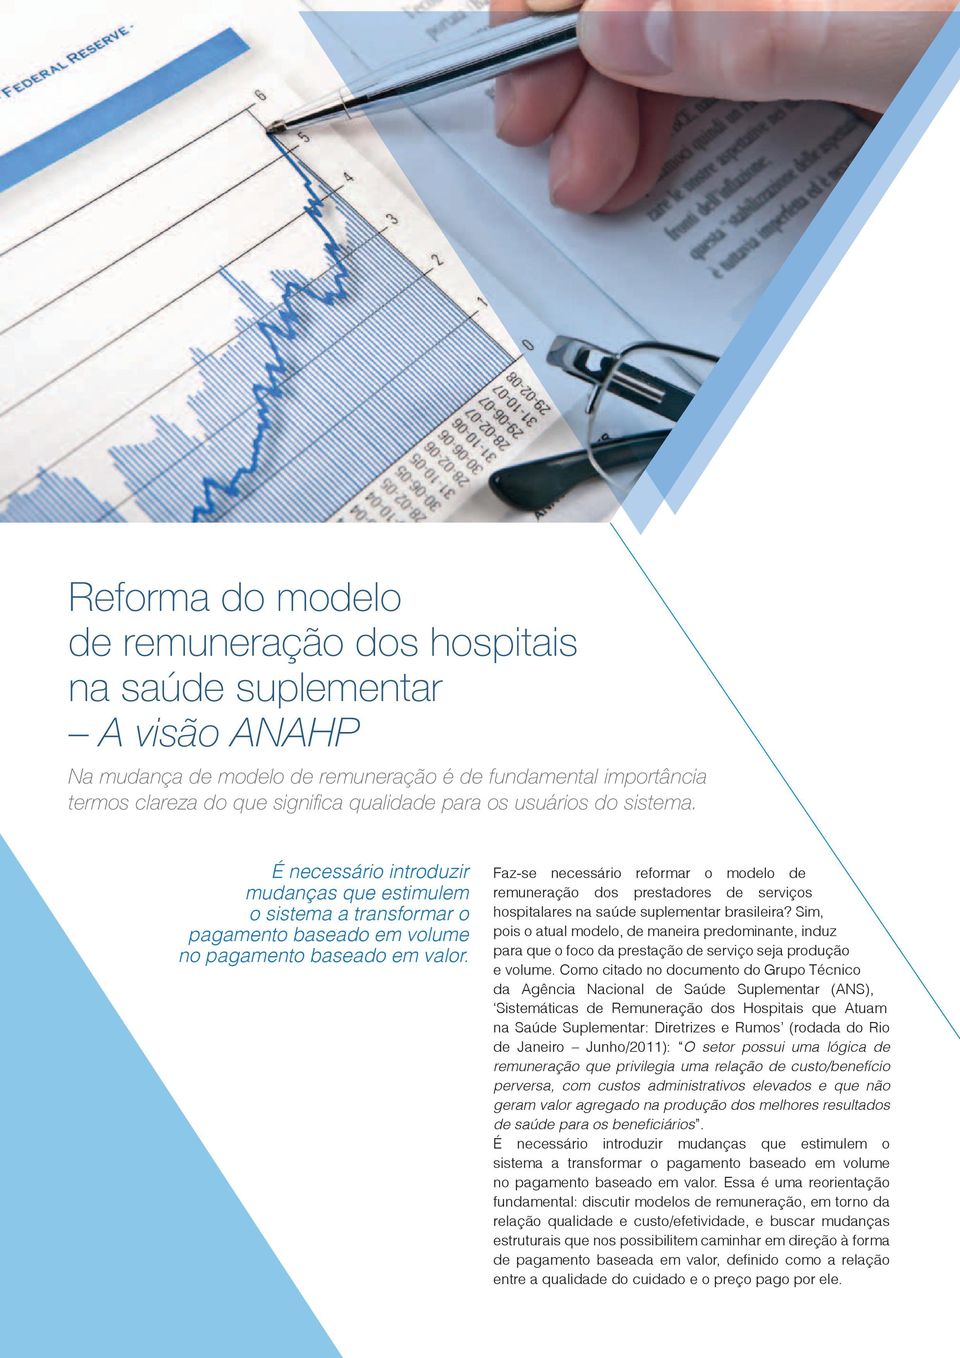 Faz-se necessário reformar o modelo de remuneração dos prestadores de serviços hospitalares na saúde suplementar brasileira?